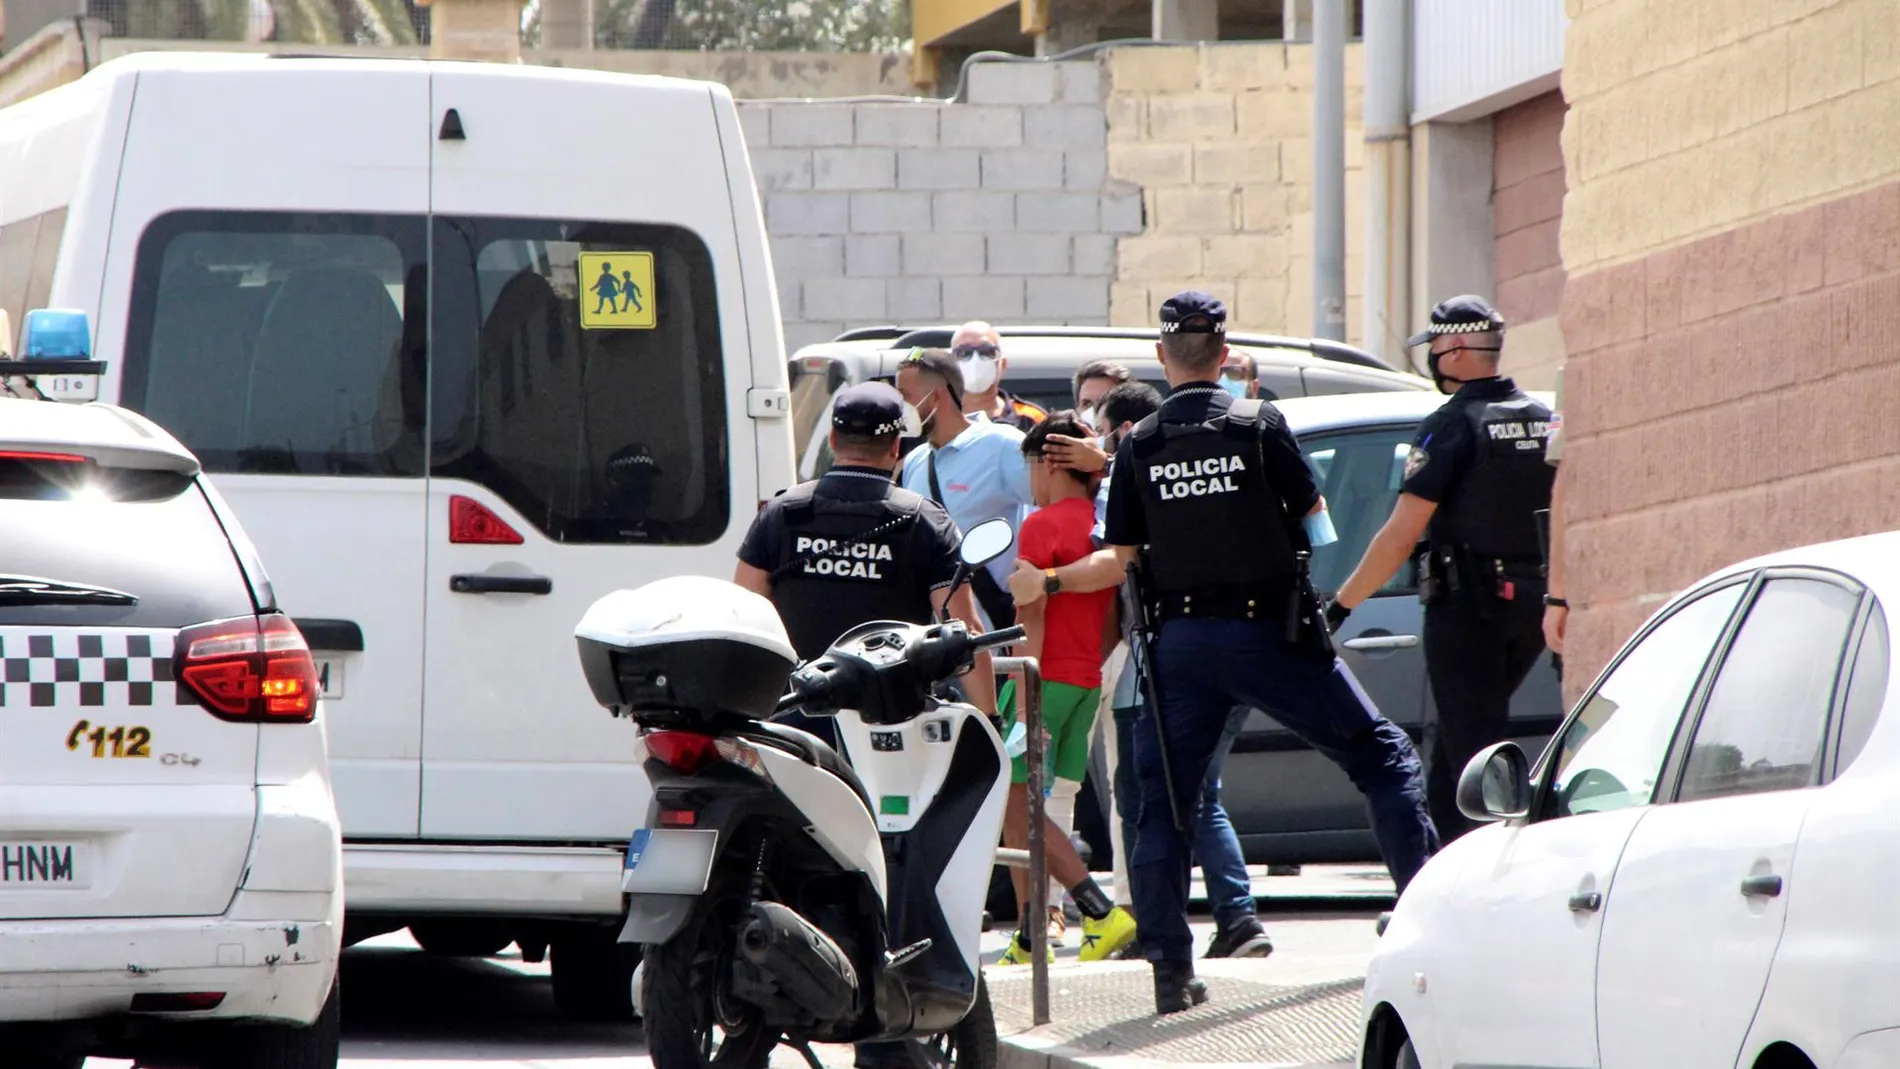 Imagen del momento en el que se produce una repatriación de menores migrantes desde Ceuta a Marruecos.